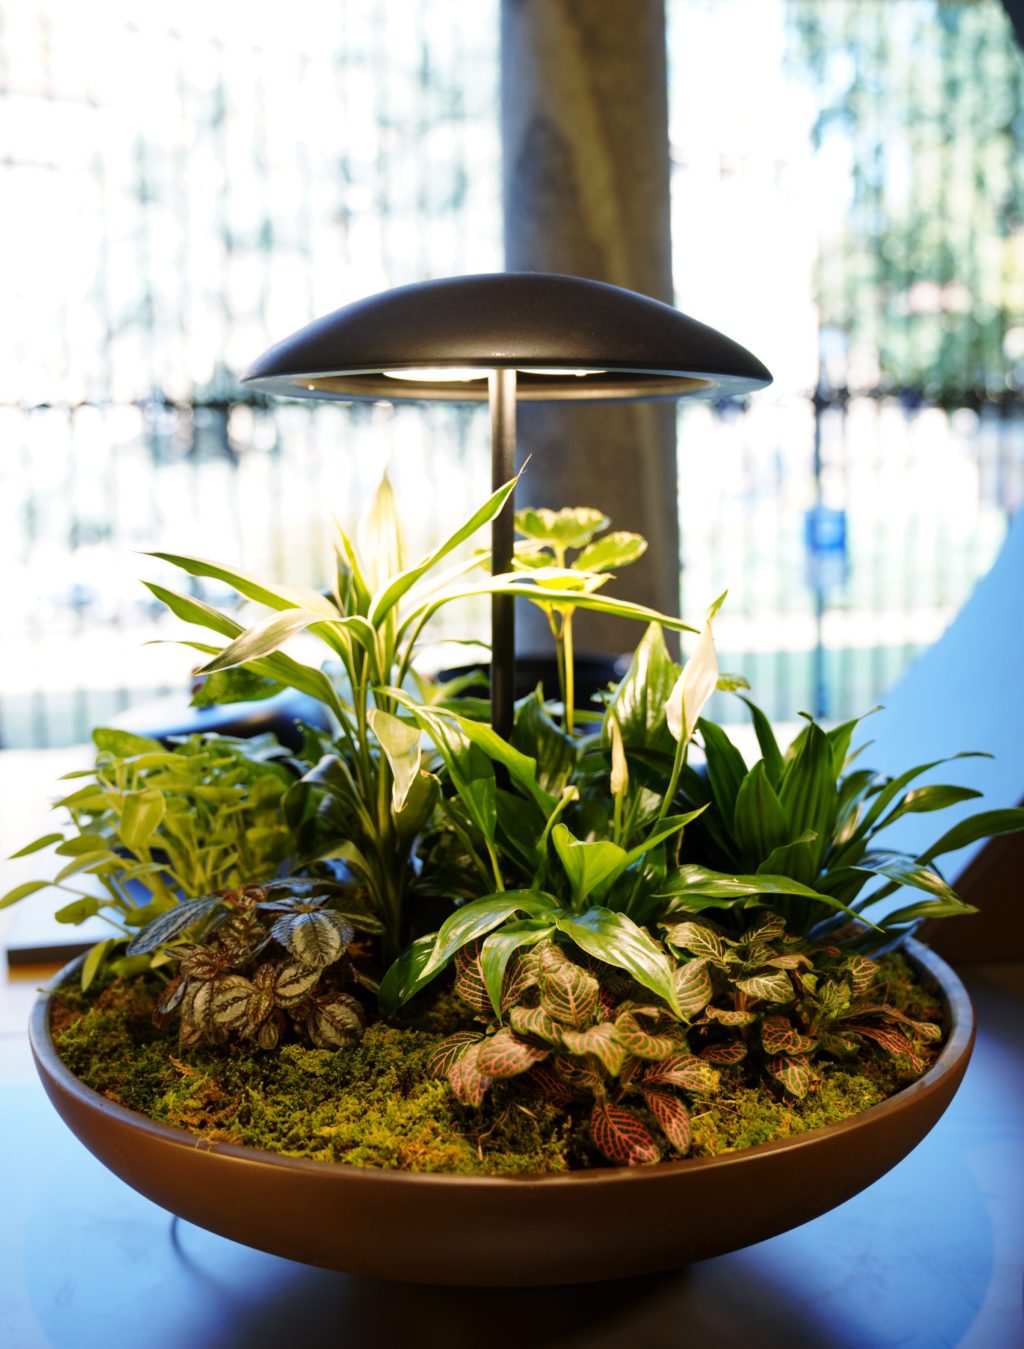 Garden: the table lamp with a mini garden